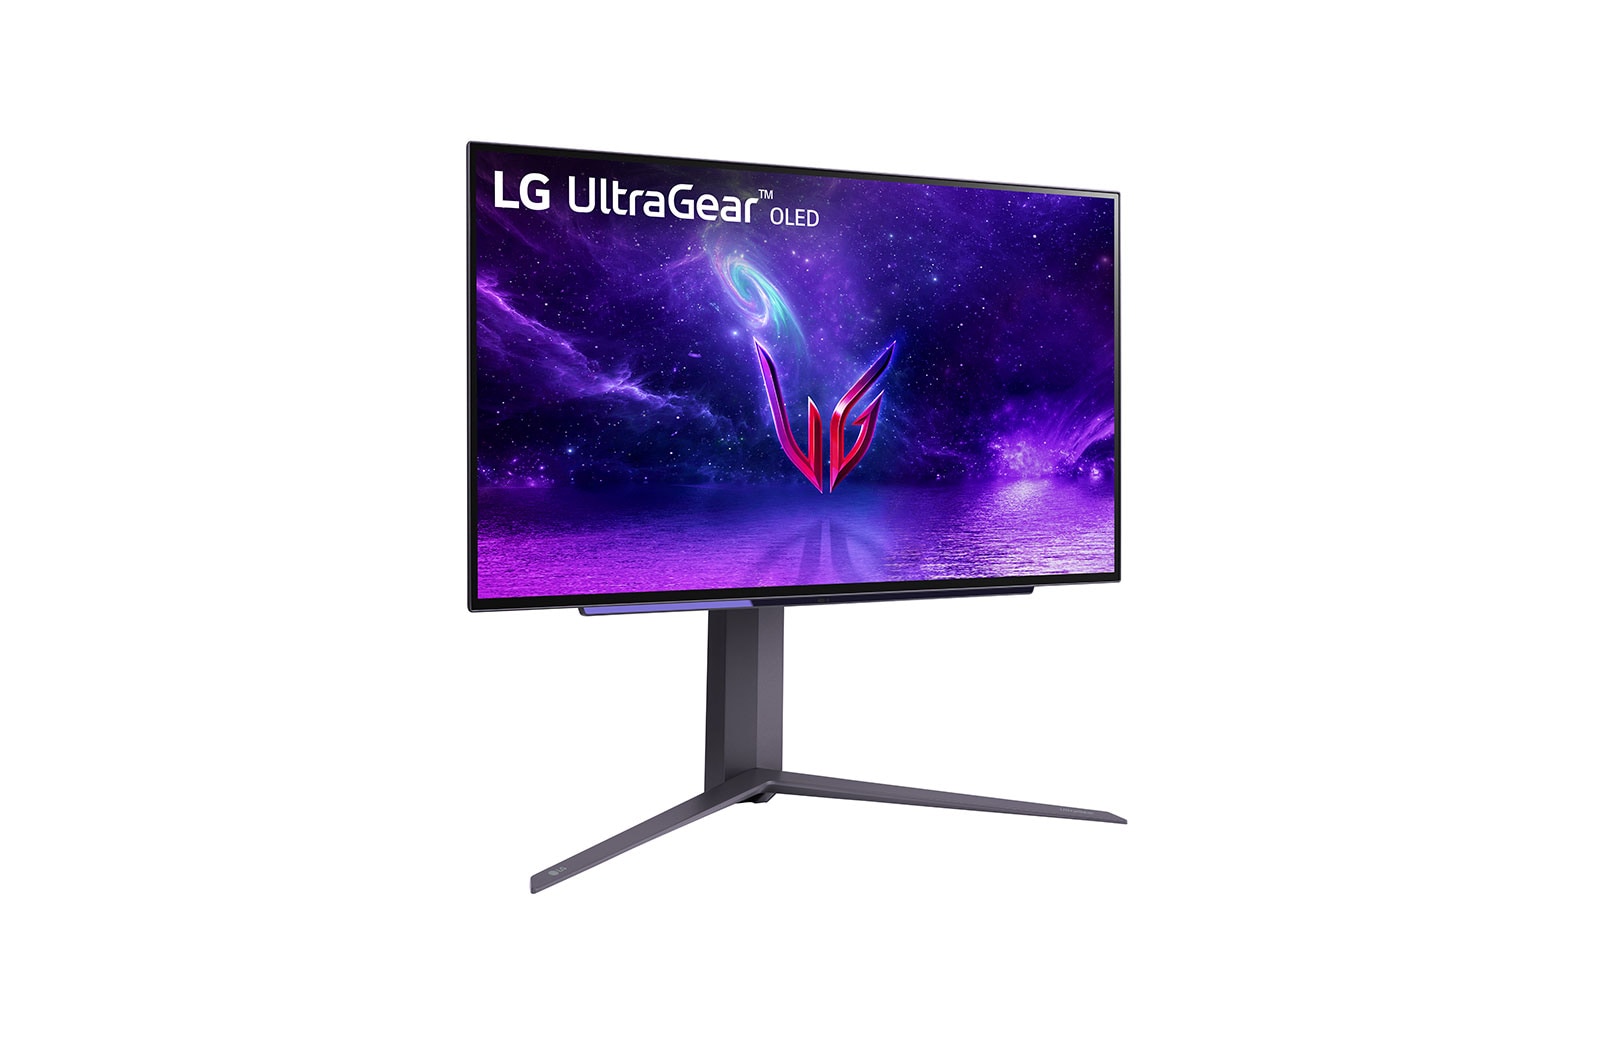 Immagine pubblicata in relazione al seguente contenuto: LG lancia il gaming monitor UltraGear OLED 27-inch con refresh rate fino a 240Hz | Nome immagine: news33884_LG-UltraGear-OLED_27-inch_2.jpg